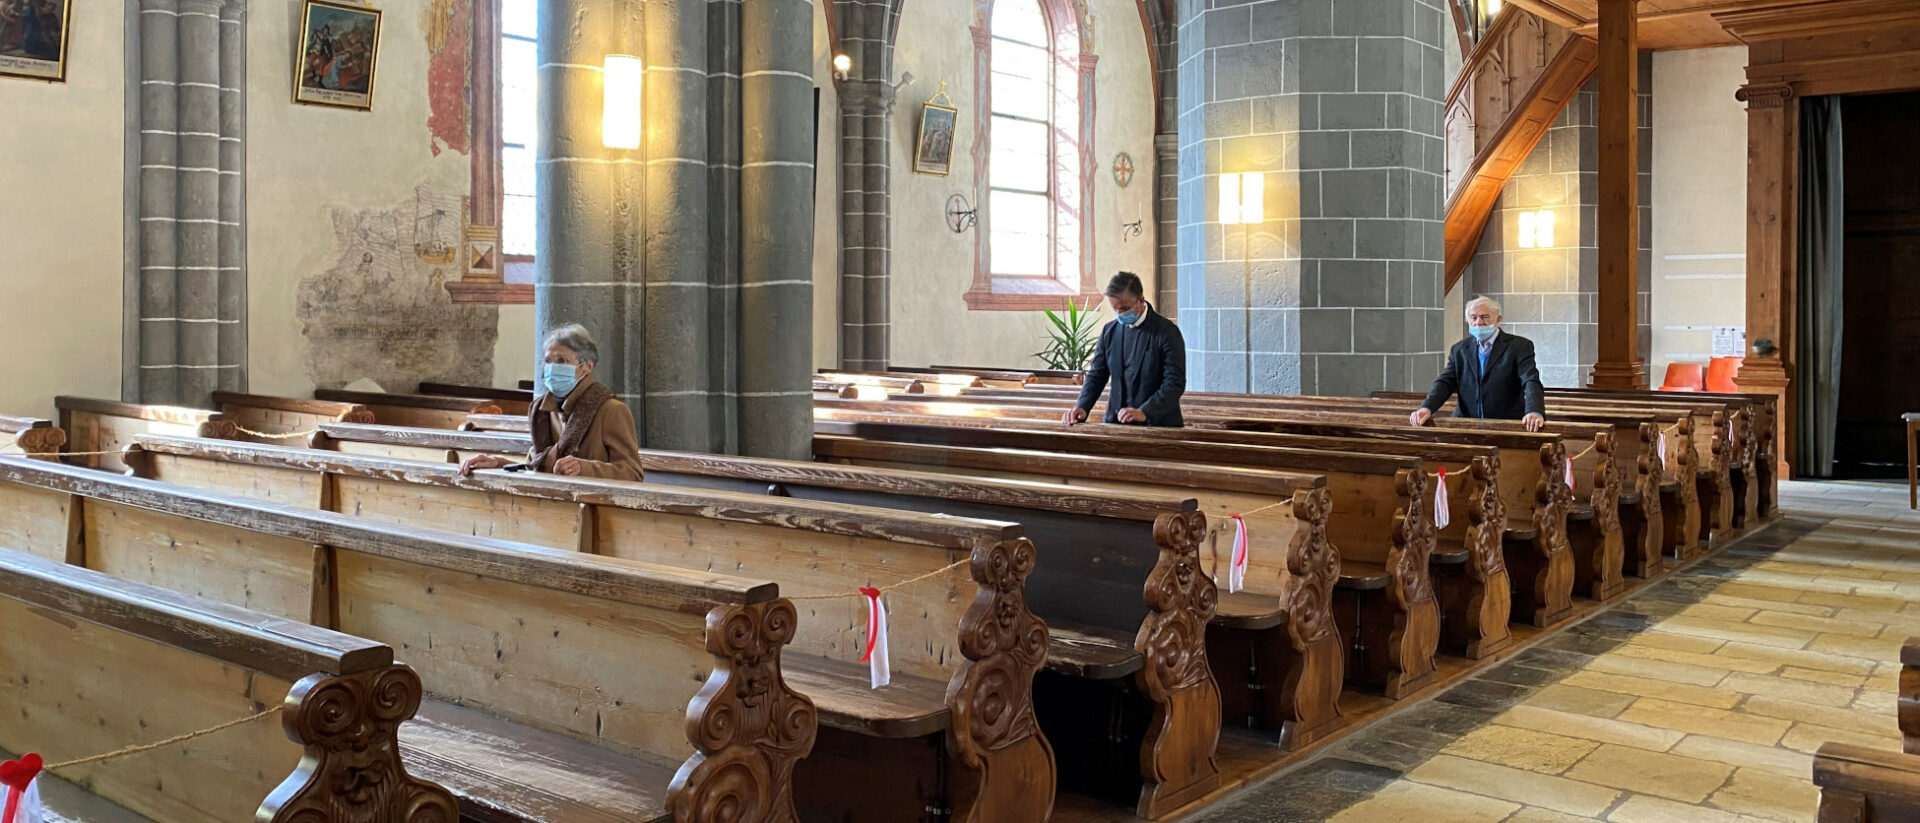 Im Oktober 2020 durften im Wallis Gottesdienste nur mit zehn Menschen stattfinden. Hier in St. Stephan, Leuk-Stadt (Wallis).